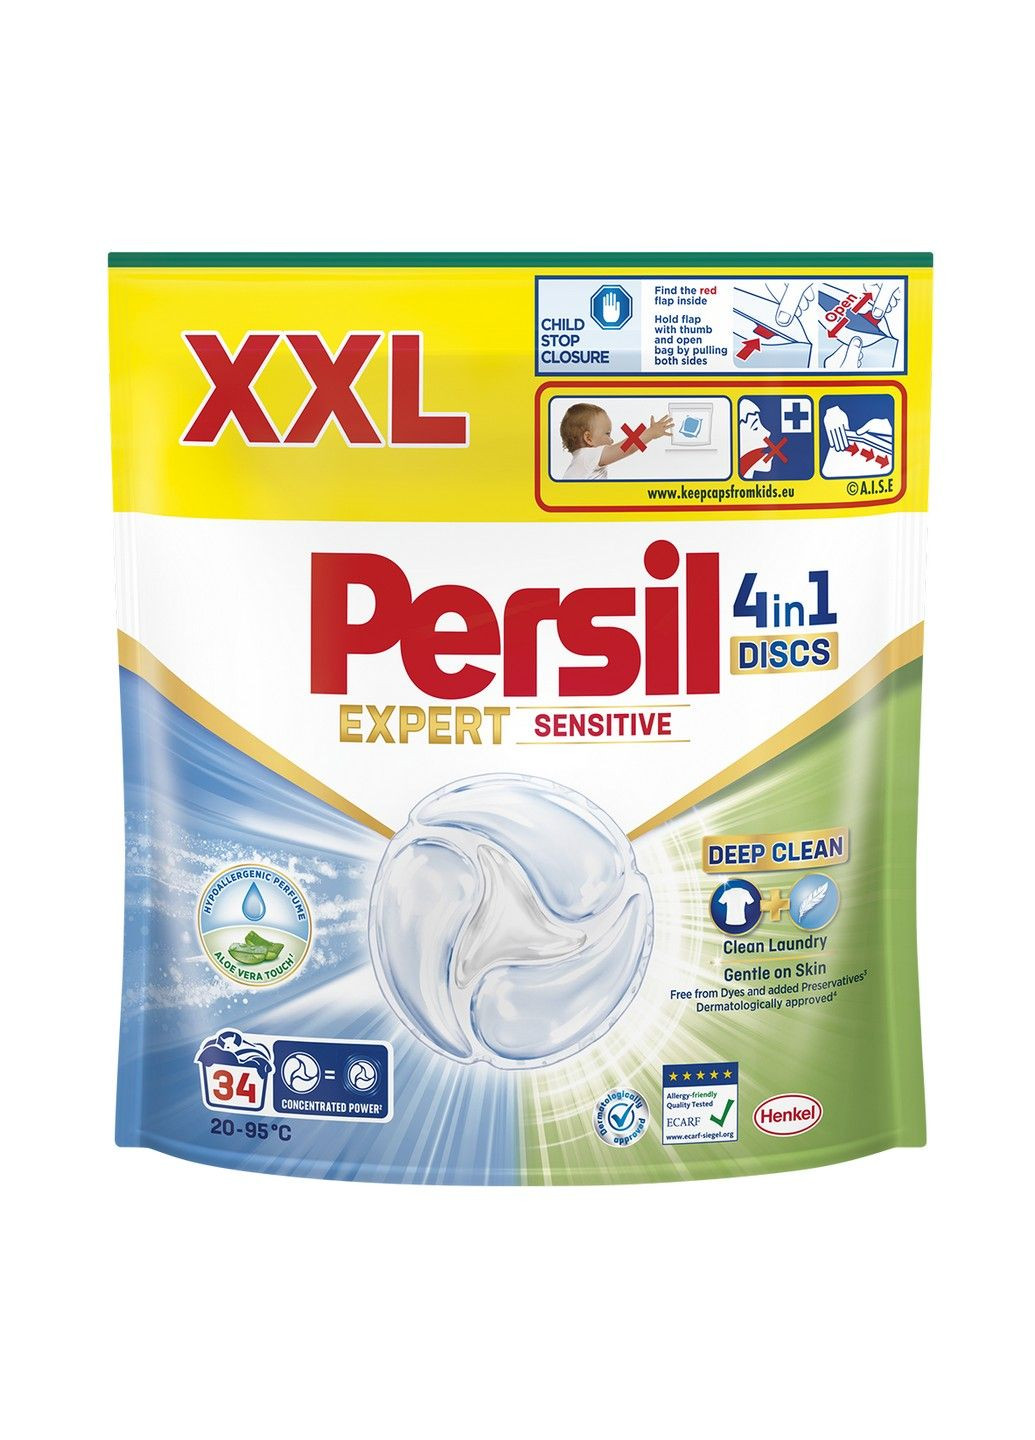 Диски для прання 4in1 Discs Expert Sensitive Deep Clean 34 шт Persil (293343736)